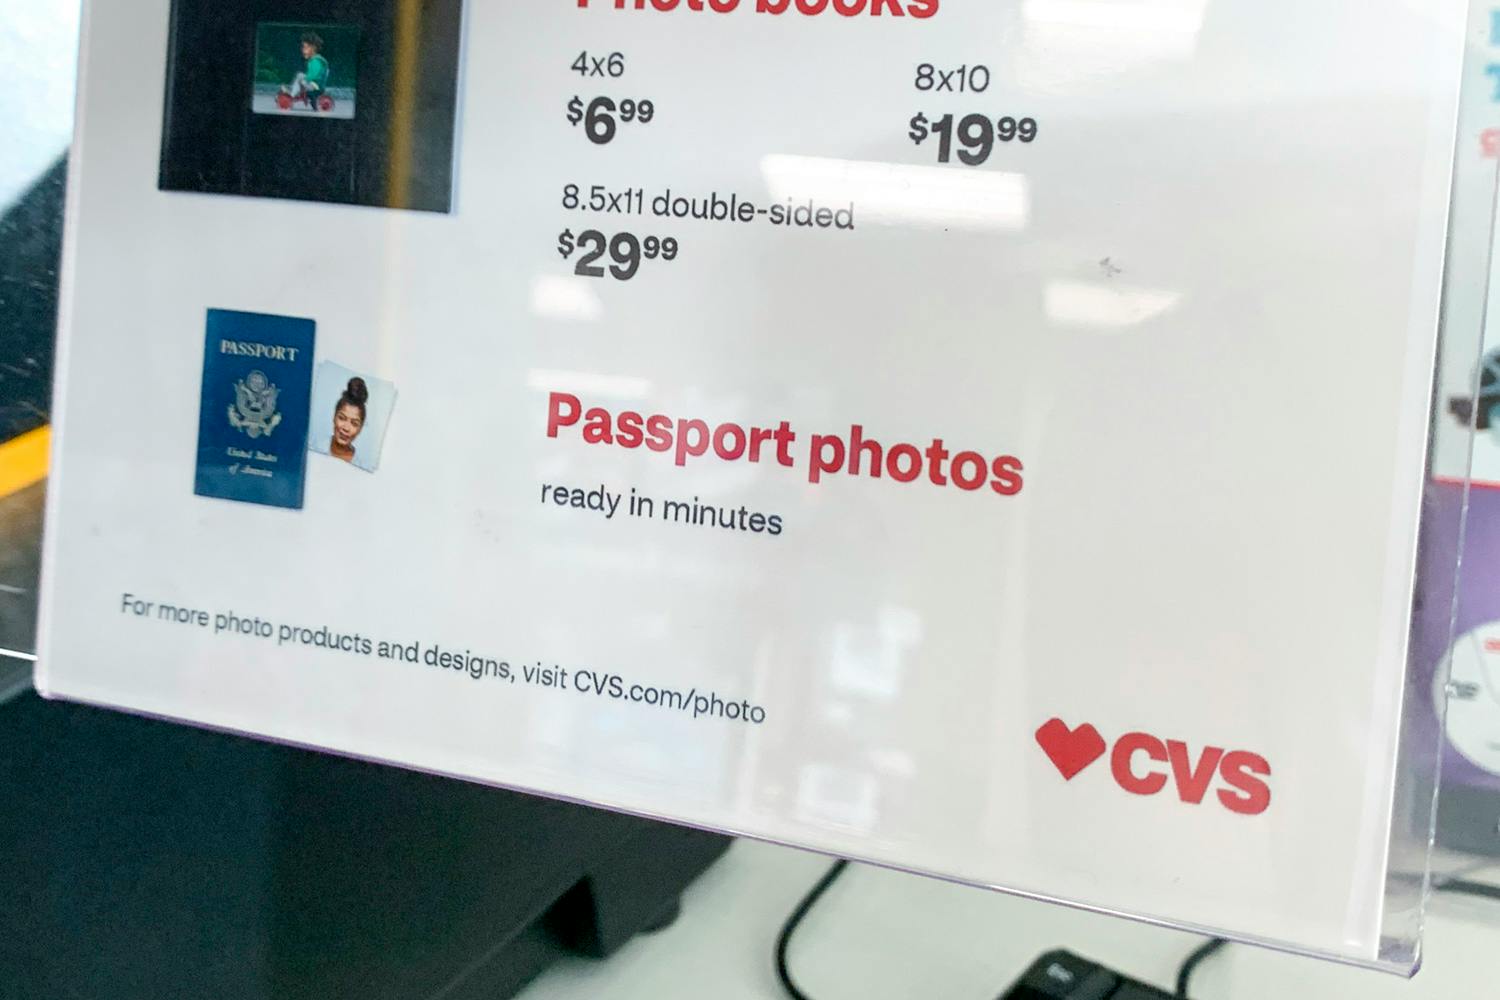 cvs passport photo coupon